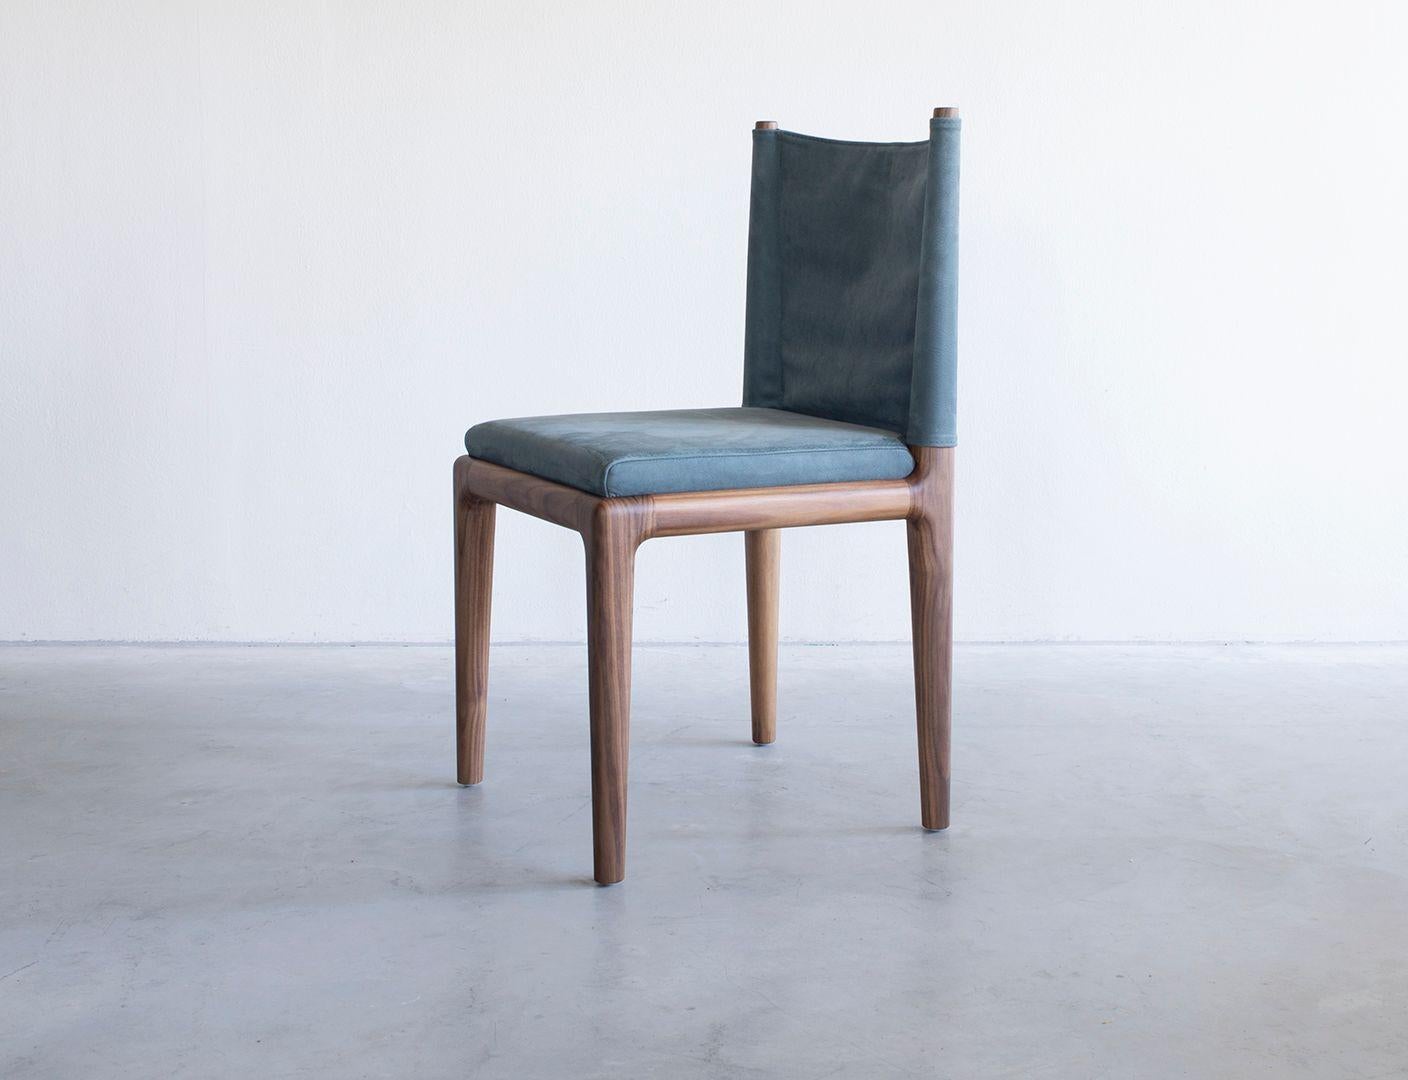 Abi-Stuhl Groß von Van Rossum
Abmessungen: T47 x B47 x H86 cm
MATERIALIEN: Nussbaum, Leder.

Das Holz ist in allen Van-Rossum-Standardfarben oder in einer auf das Kundenmuster abgestimmten Ausführung erhältlich.
Wählen Sie aus unseren Lederfarben,